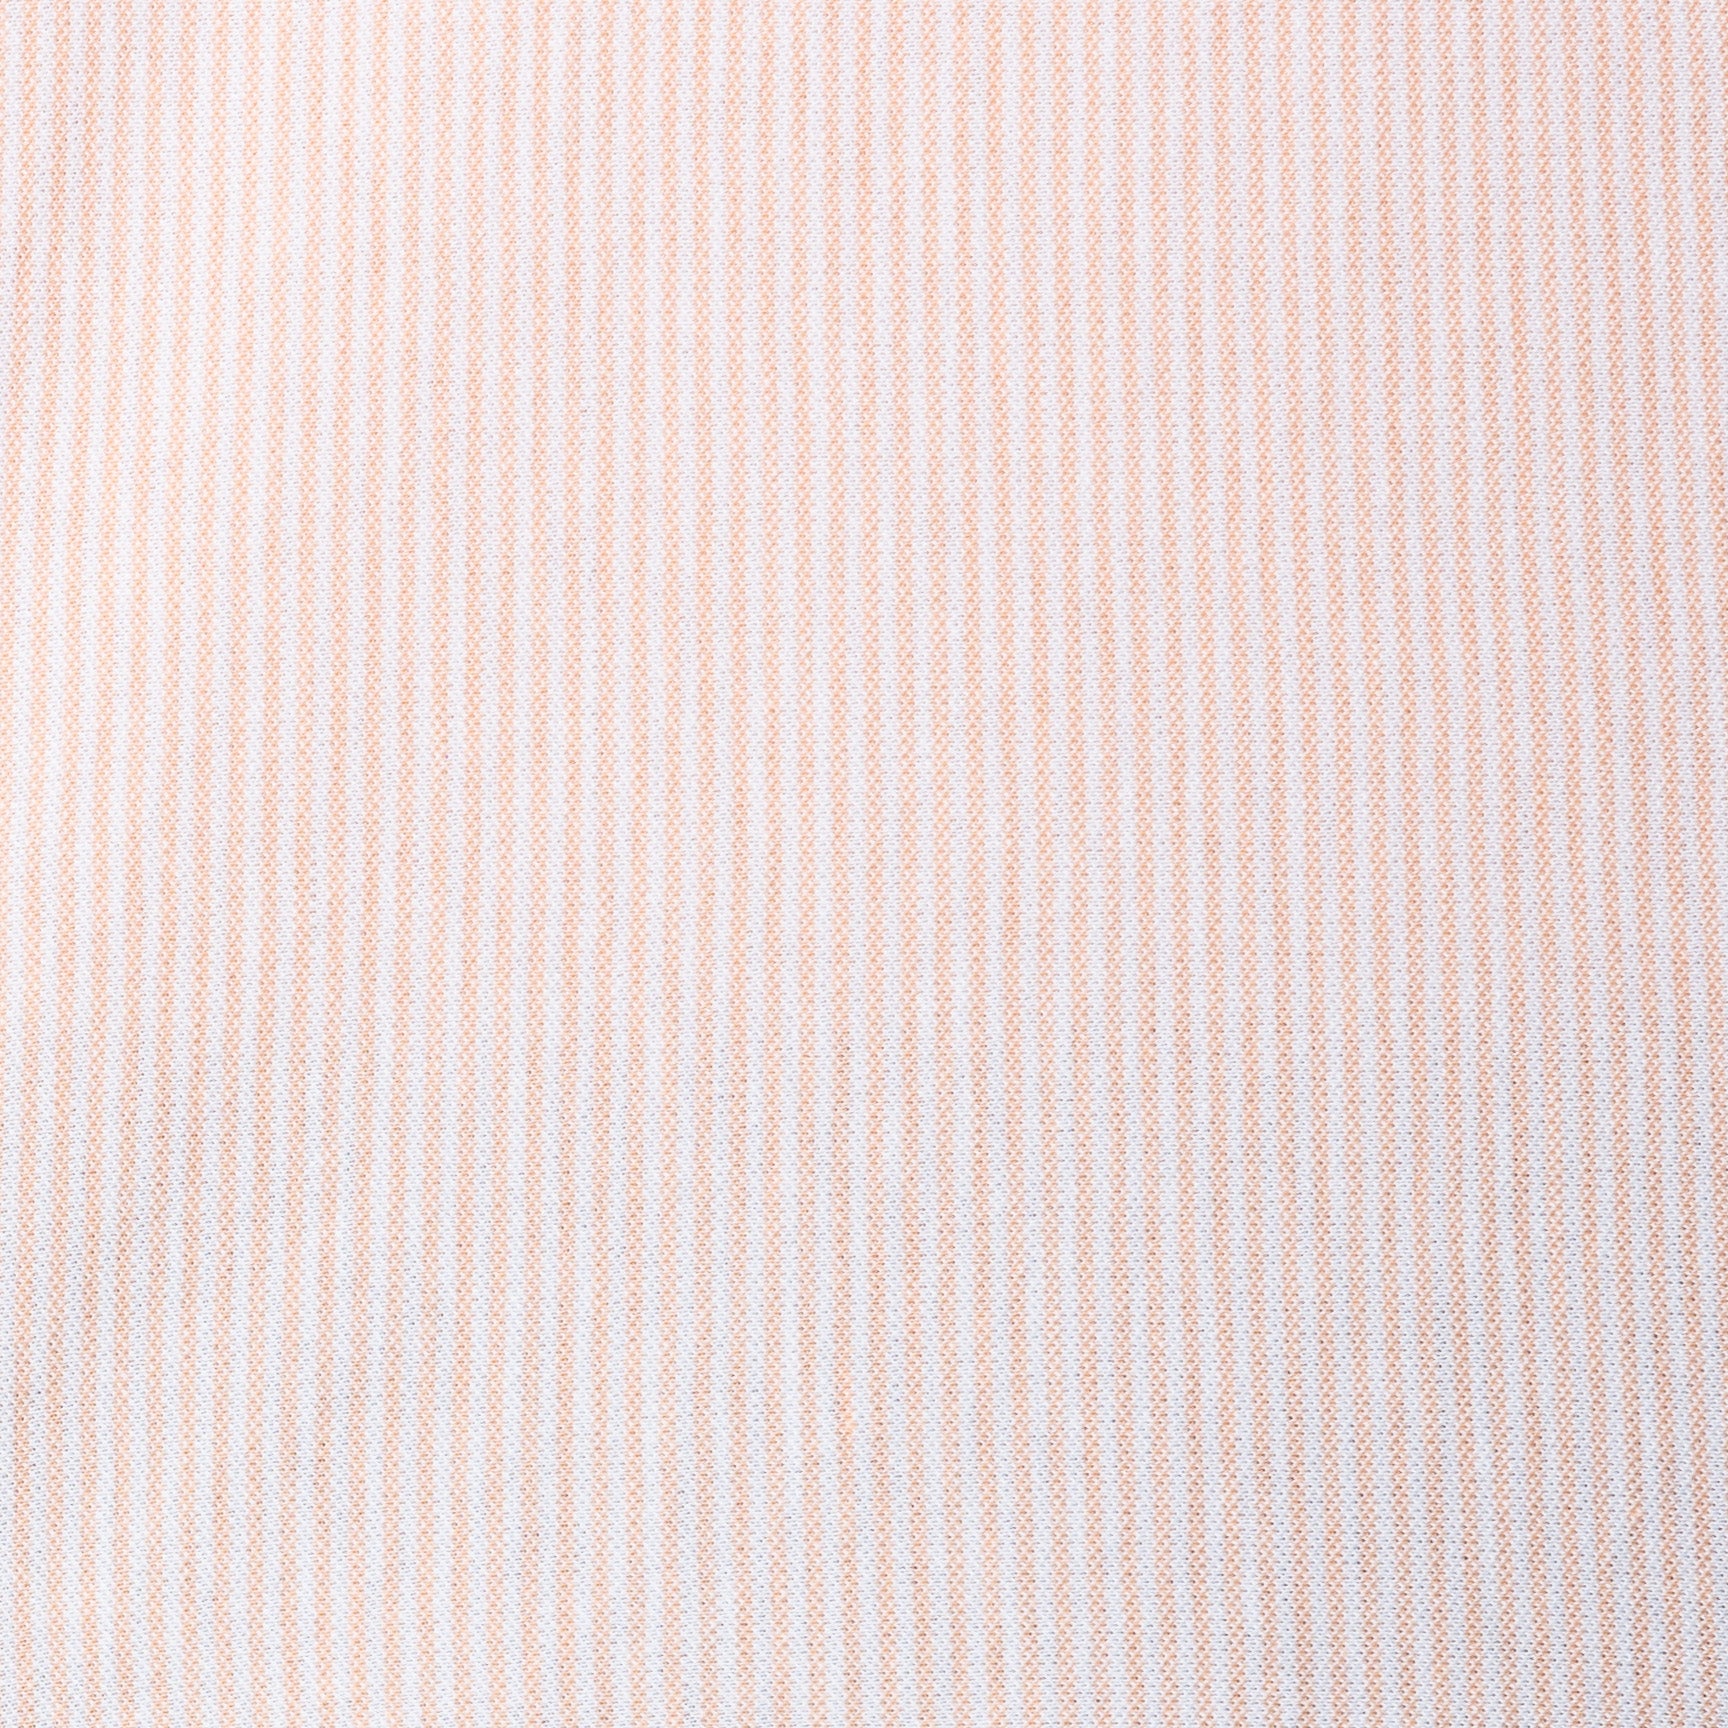 FEDELI "Kaos" Orange Striped Cotton Light Oxford Pique Polo Shirt 54 NEW XL Slim FEDELI